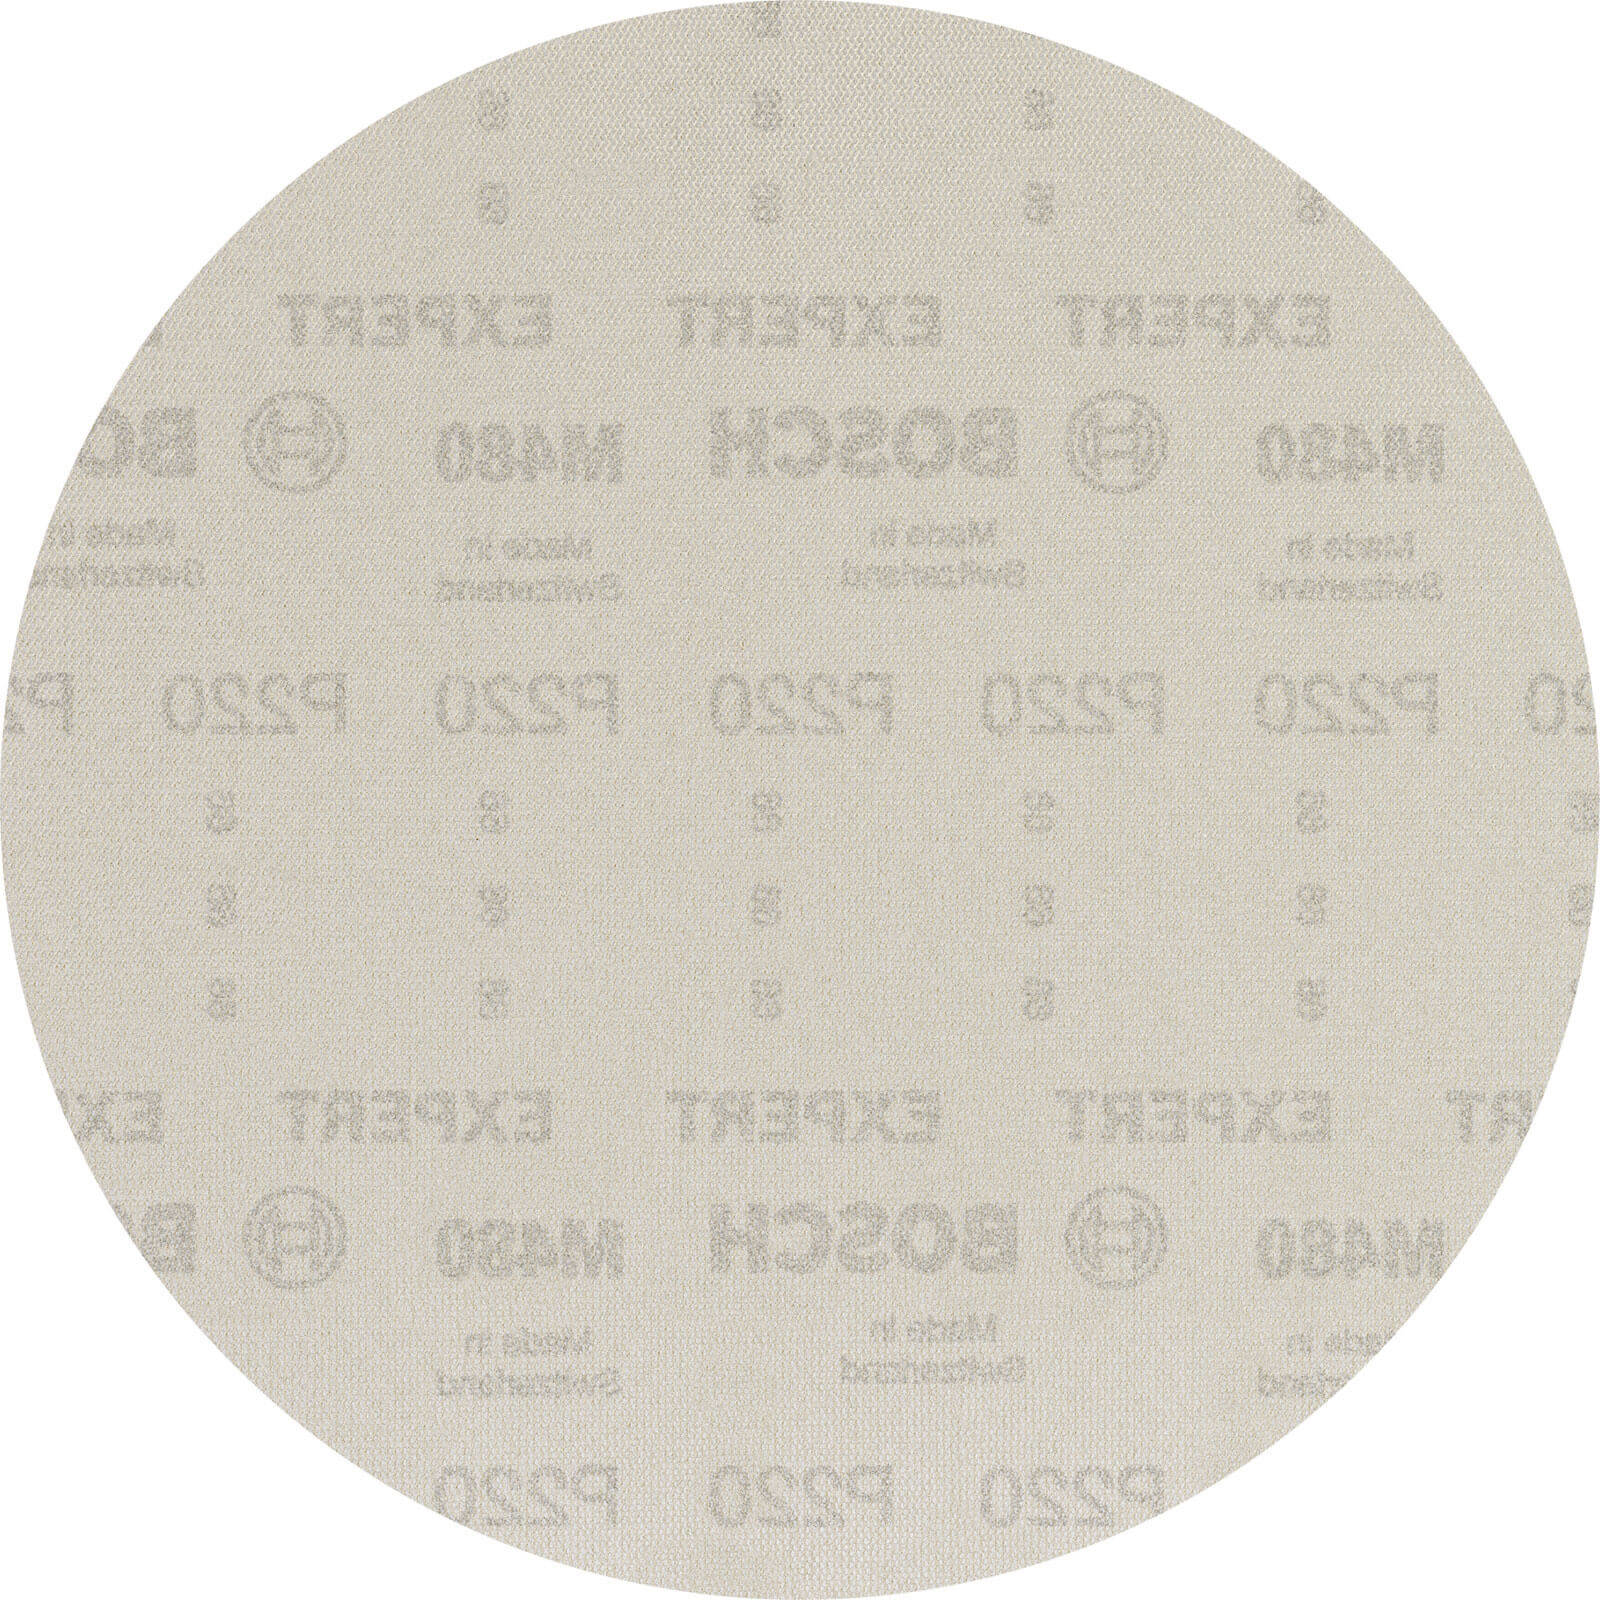 Bosch Expert M480 225mm Net Abrasive Sanding Disc 225mm 220g Pack of 25